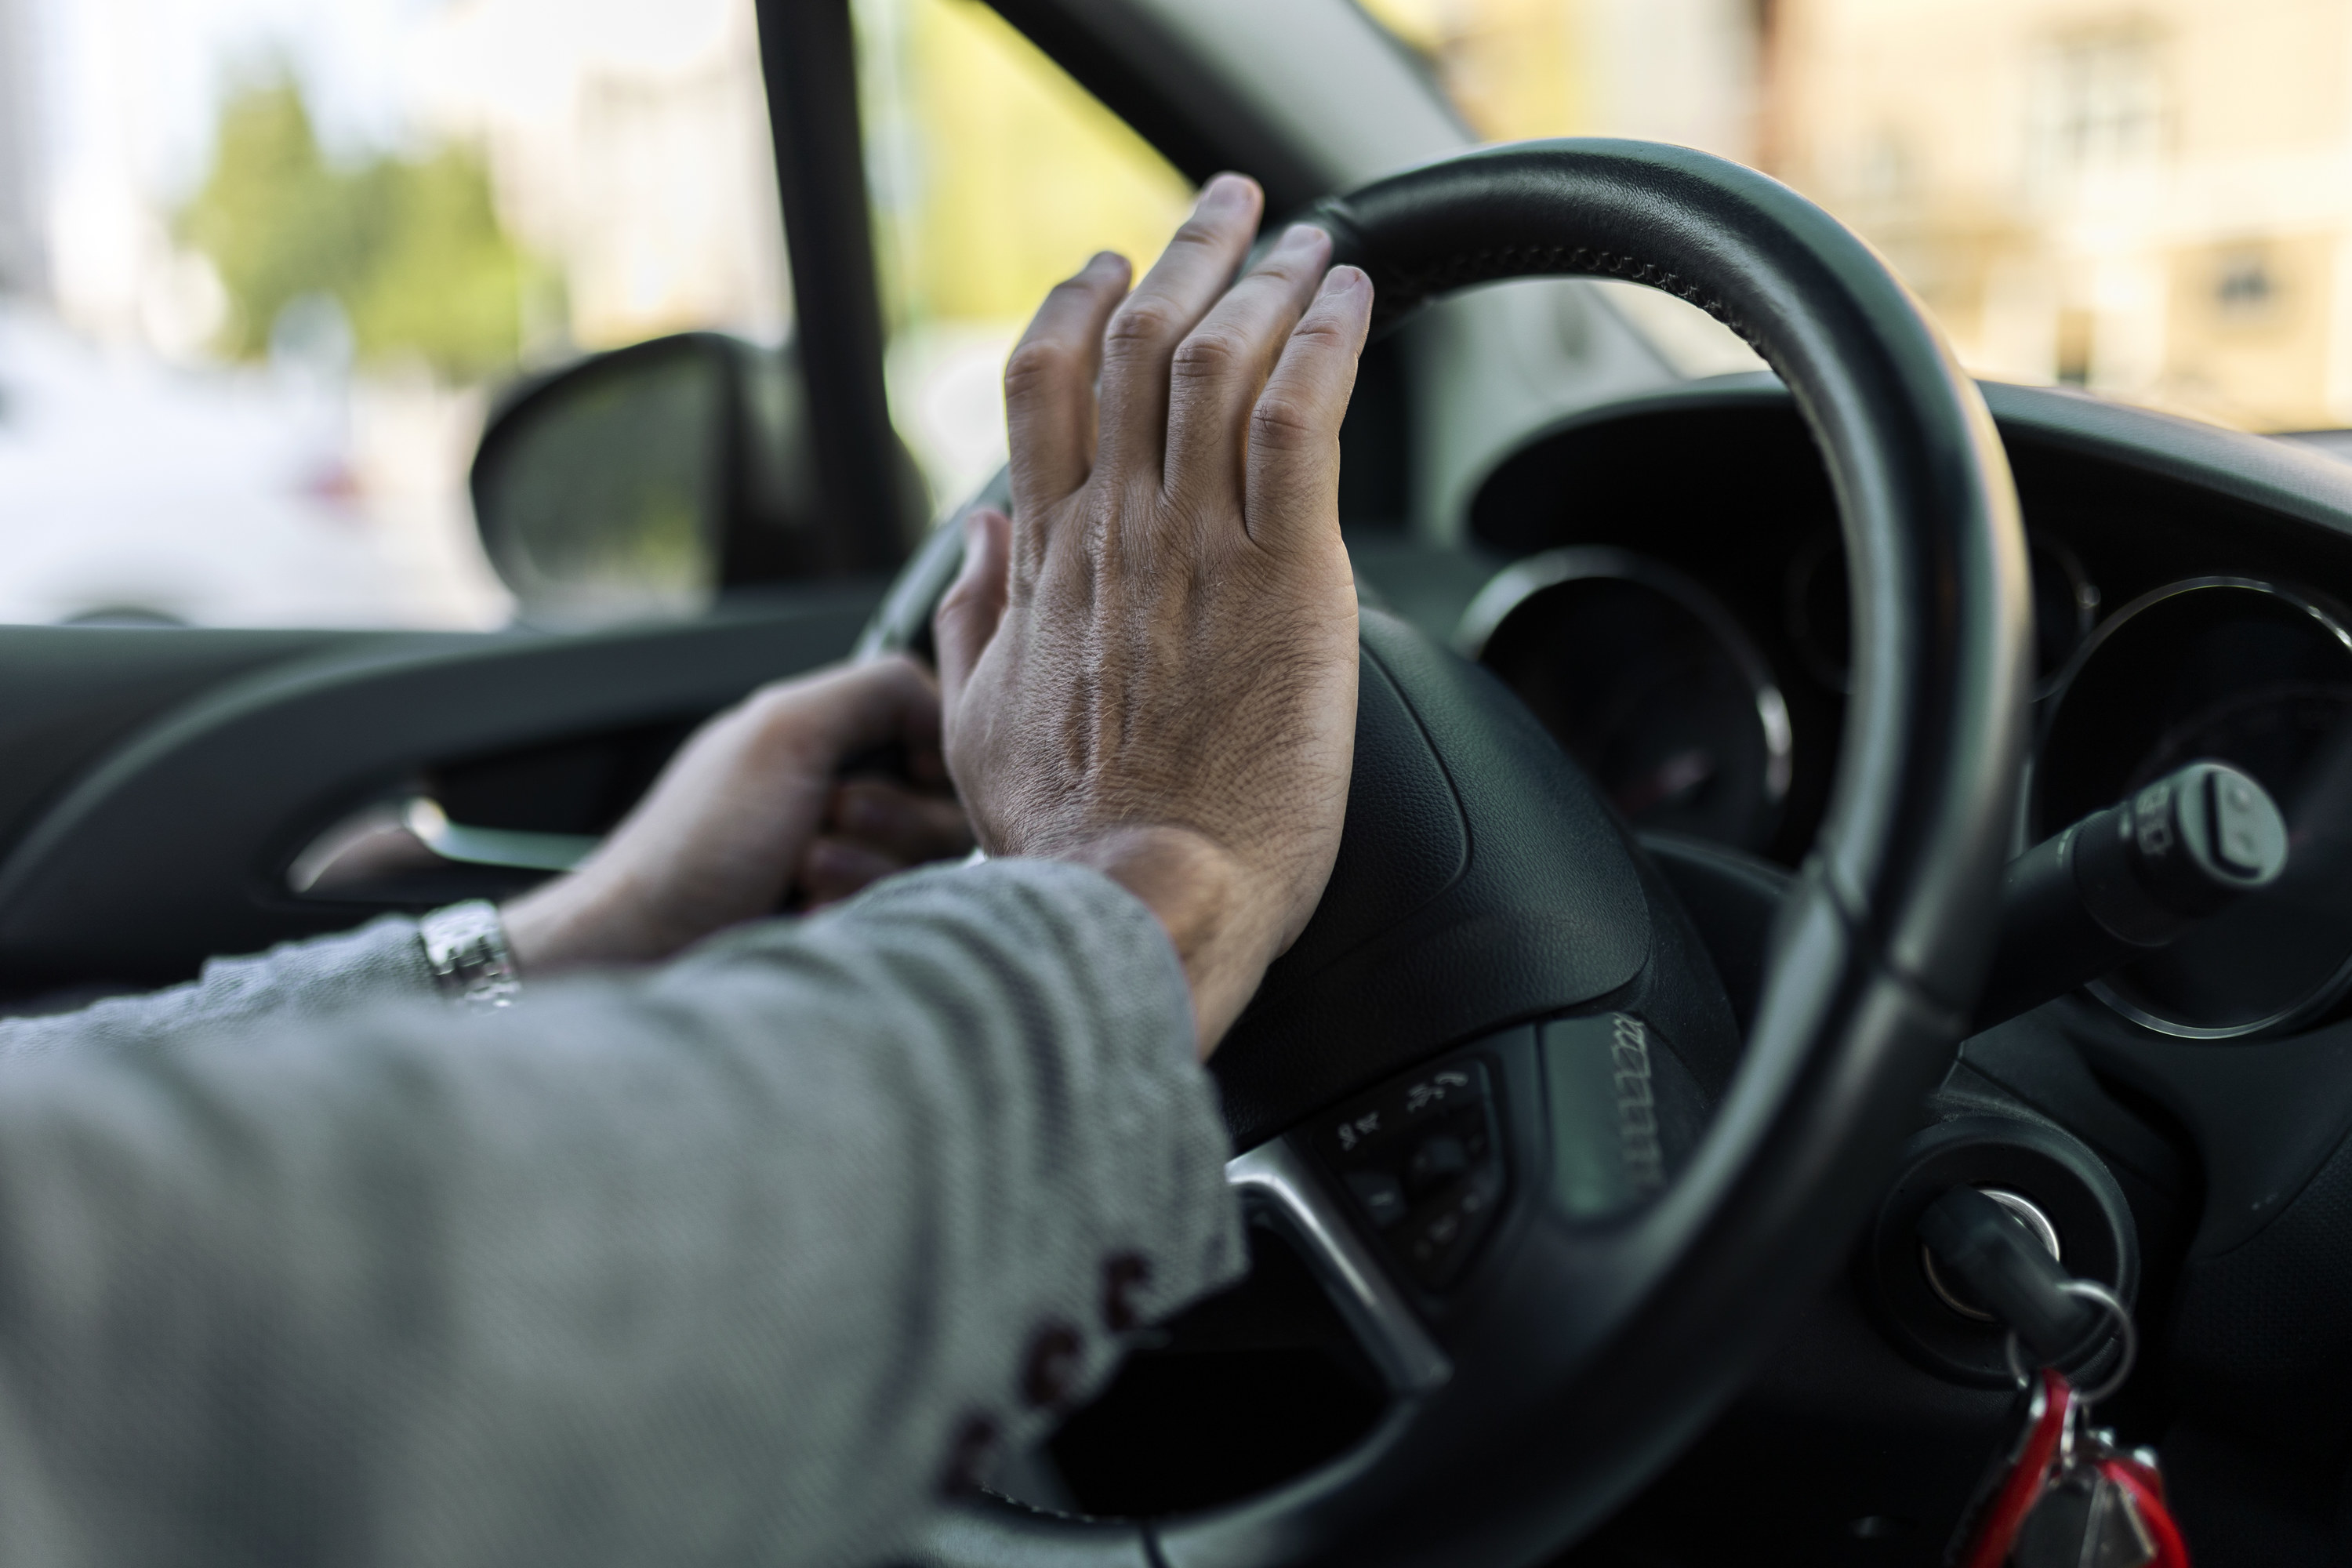 An image of a man&#x27;s hand honking a horn on a car steering wheel